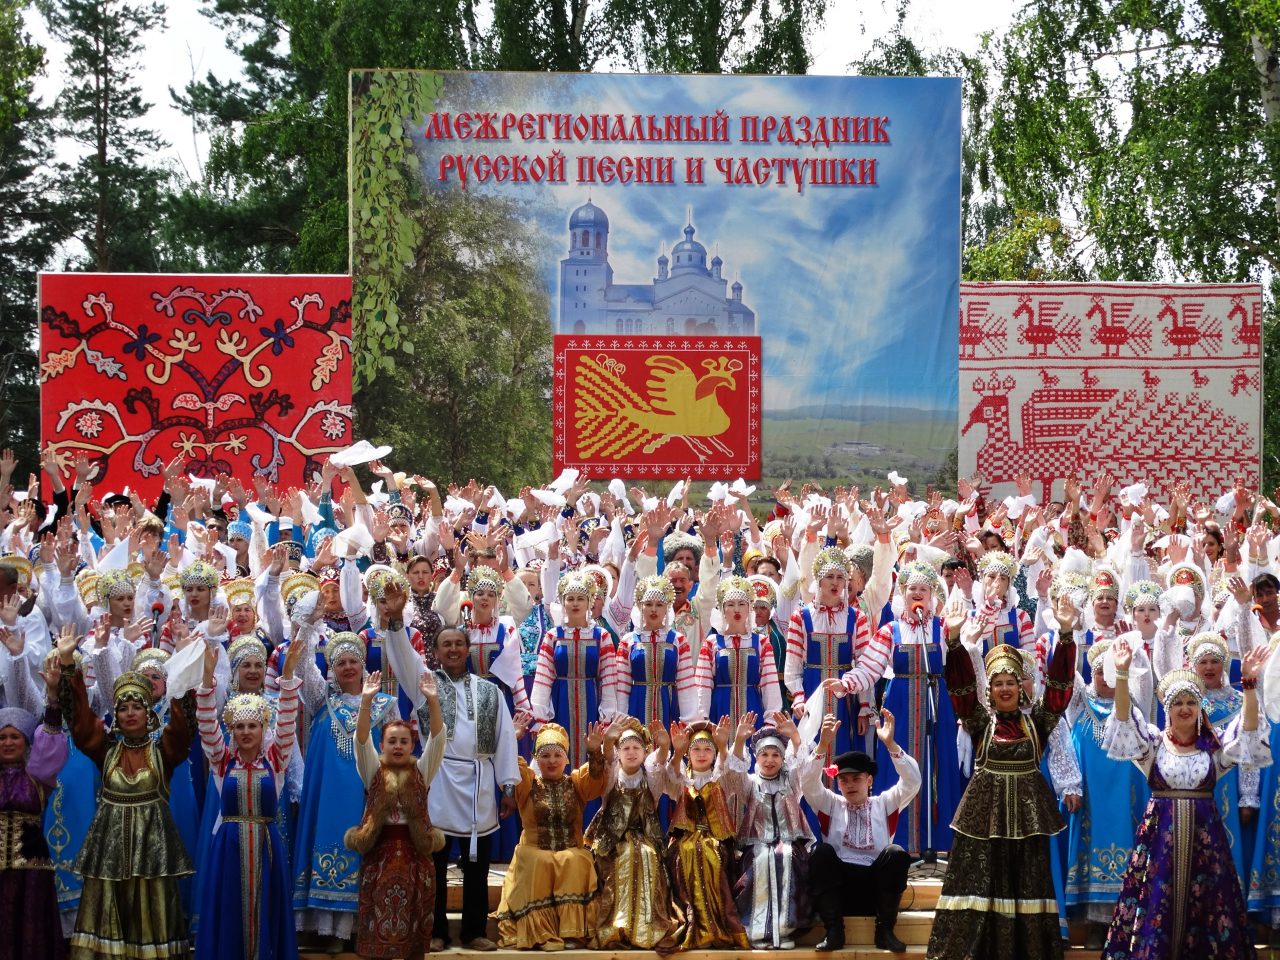 XVII Межрегиональный праздник русской песни и частушки принимает заявки